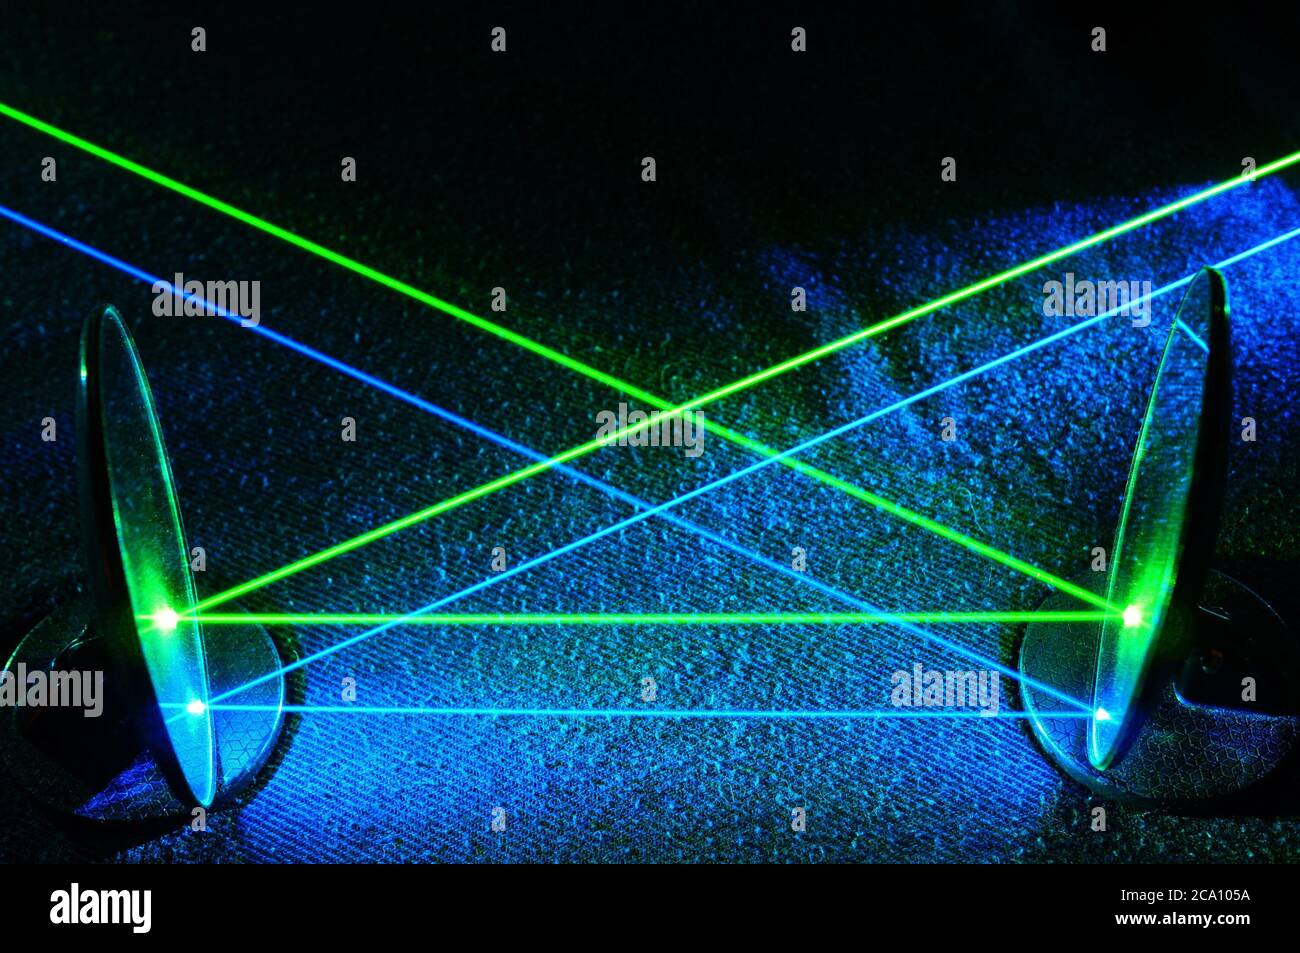 Faisceaux laser verts et bleus reflétant les miroirs en lignes parallèles.  Laser, science, lumière, faisceau visible, collimaté, concentré, coloré  Photo Stock - Alamy